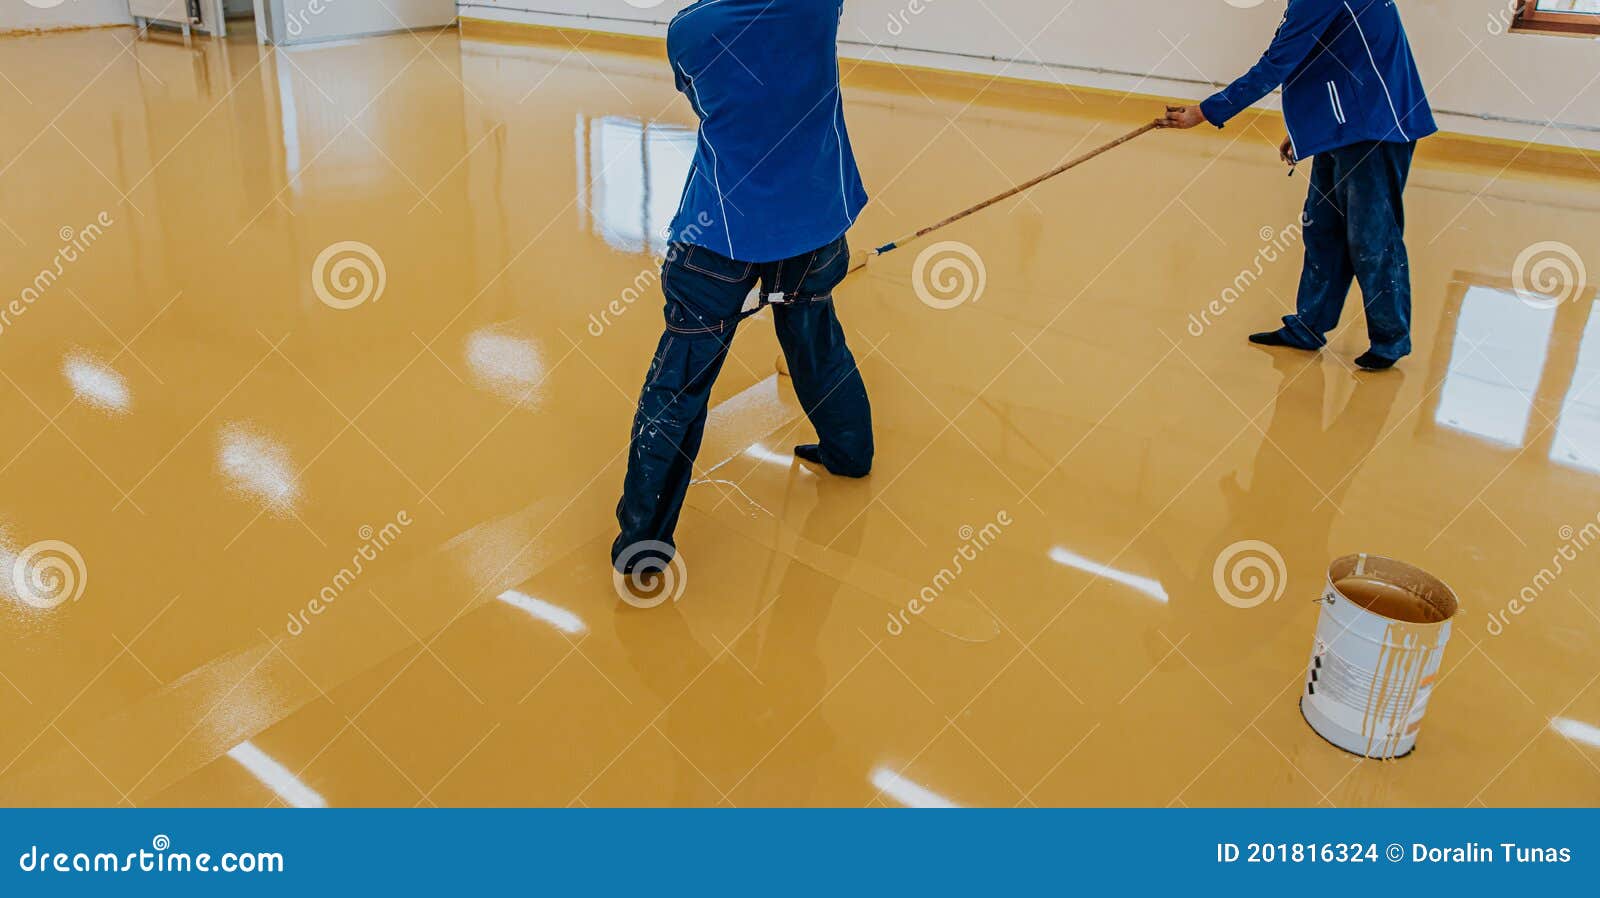 worker, coating floor with self-leveling epoxy resin